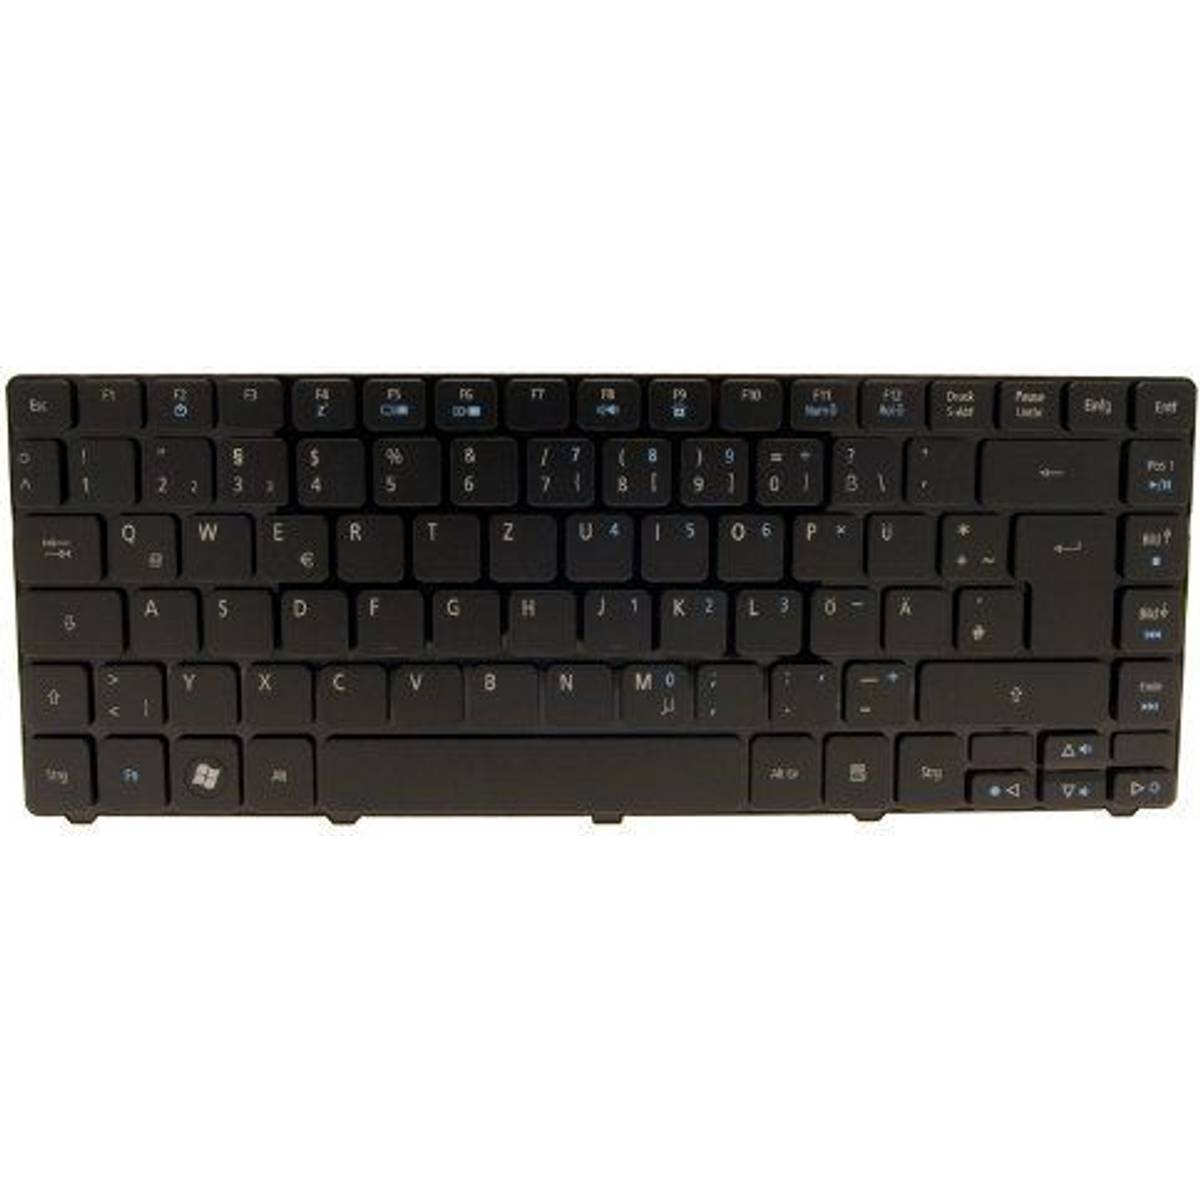 Acer Tastatur (2 produkter) hos PriceRunner • Se billigste pris nu